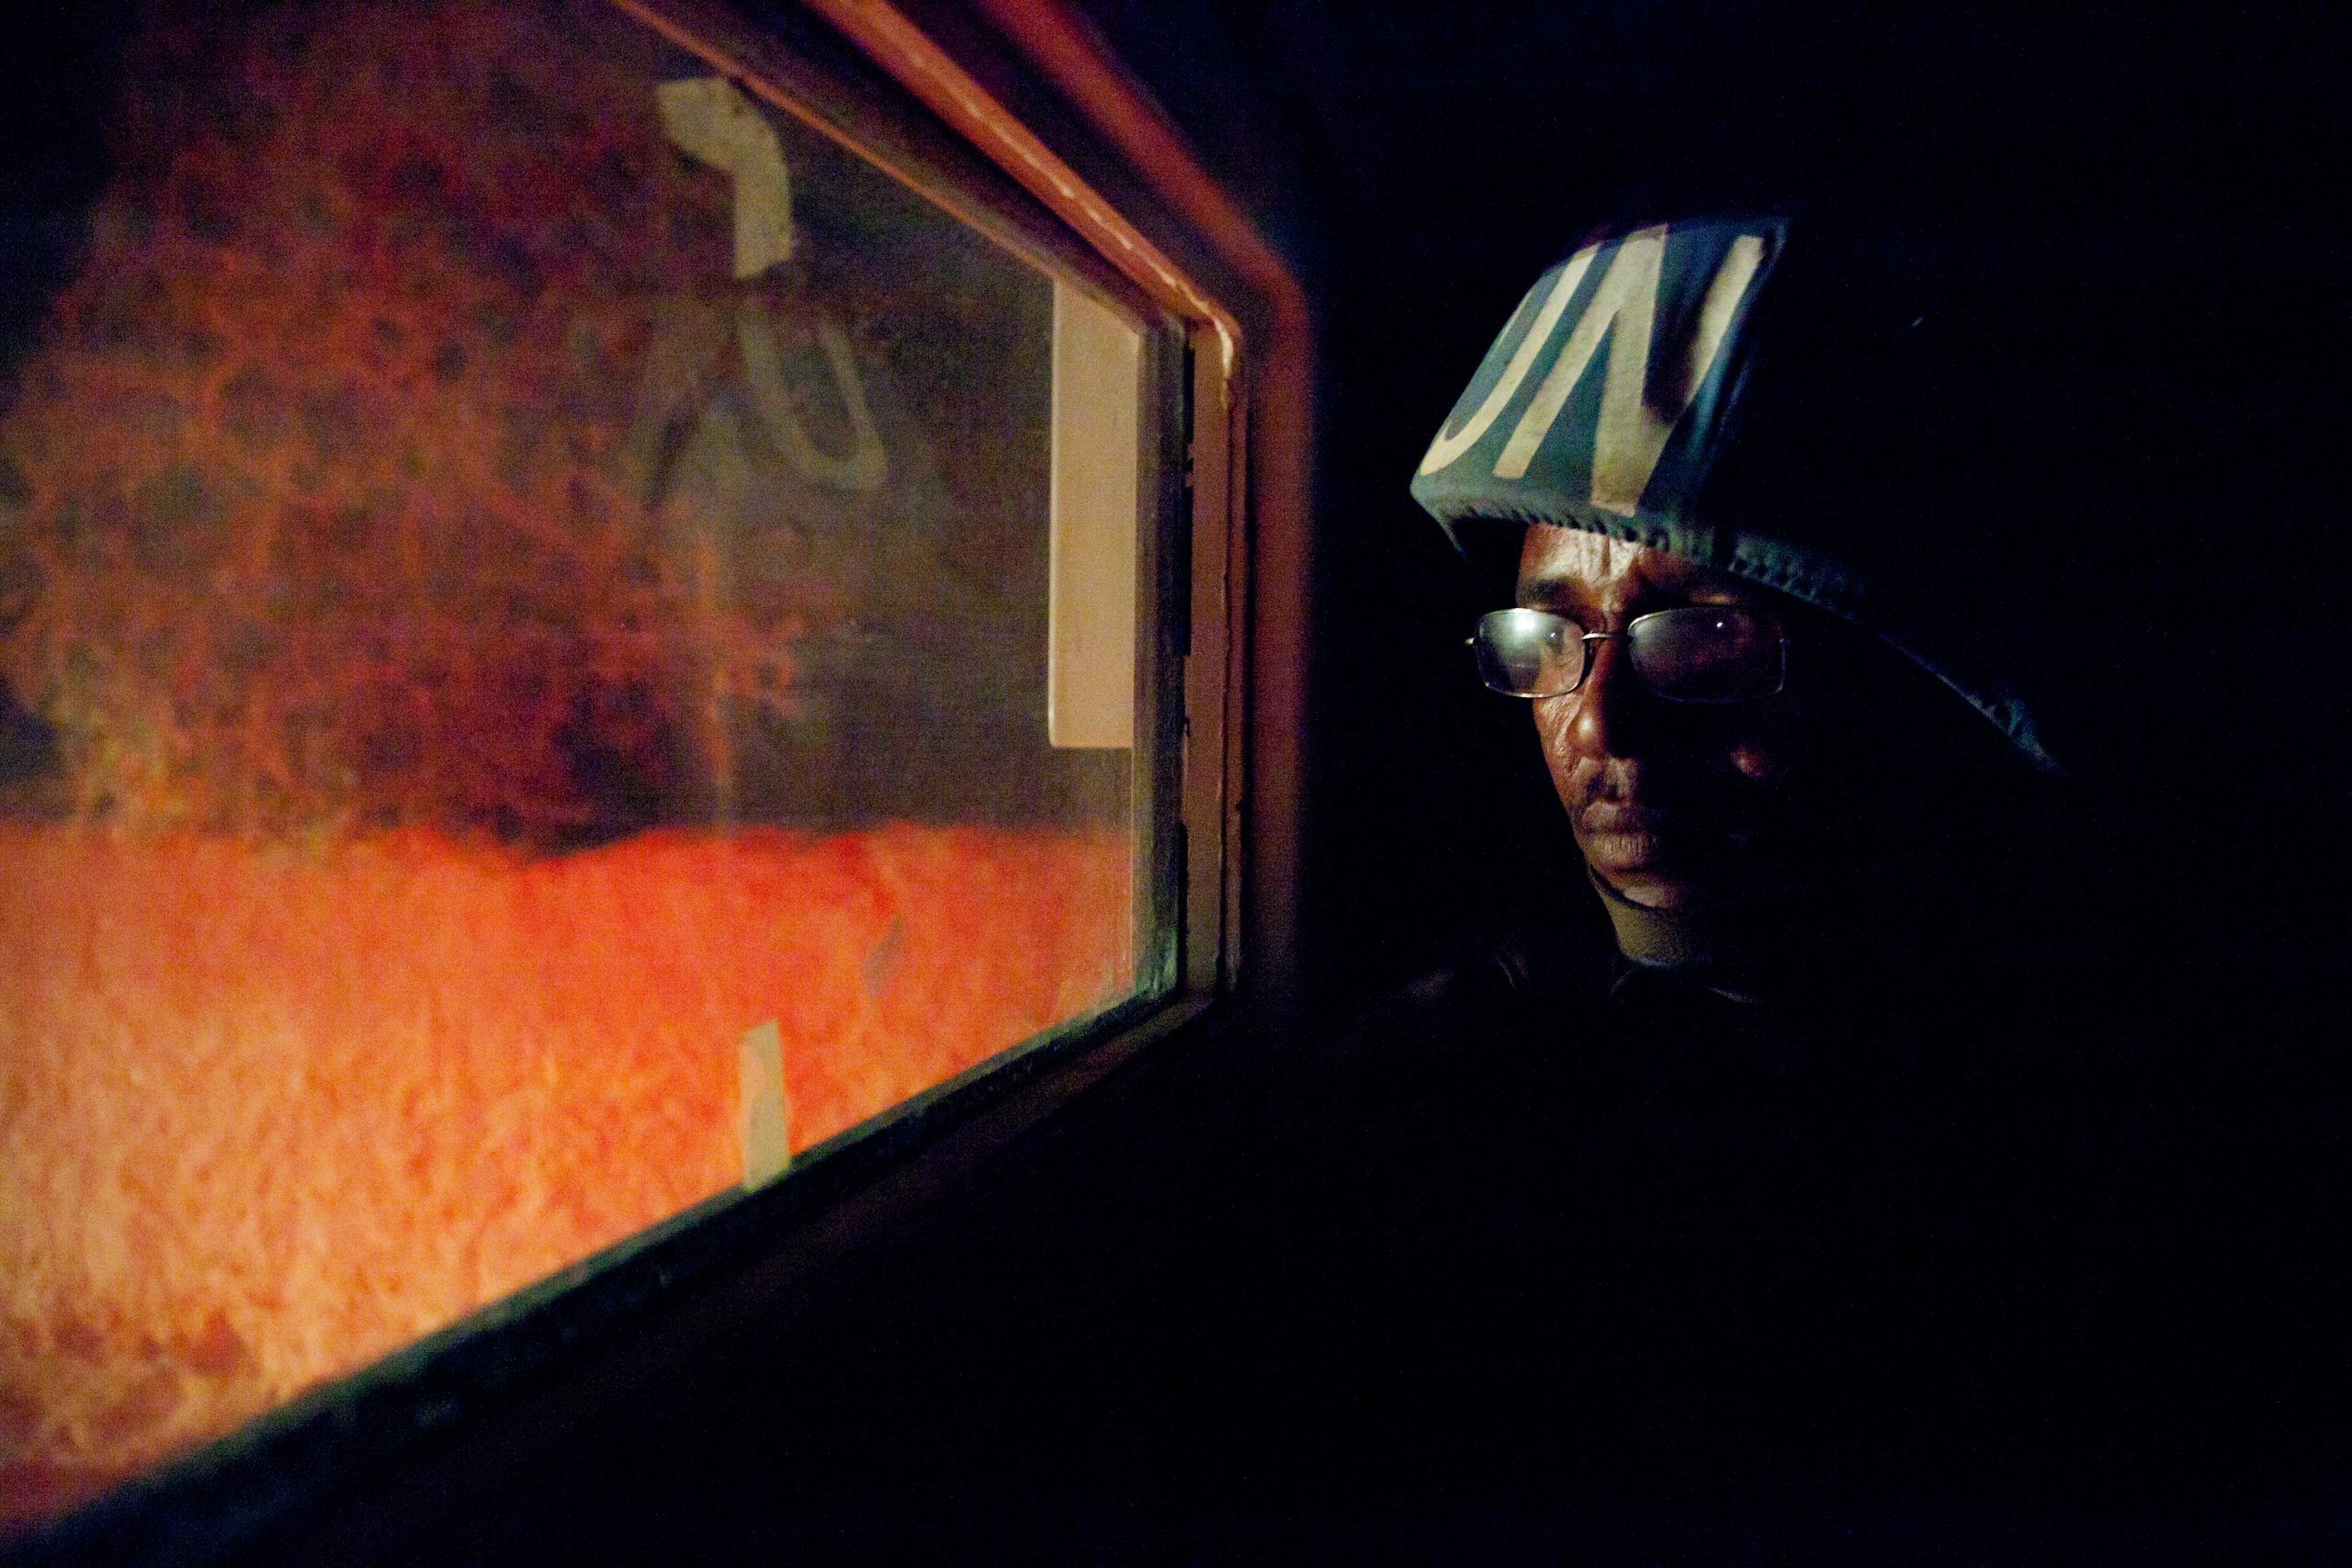 En mann med hjelm hvor det står UN, ser ut av et smalt vindu. Det er natt